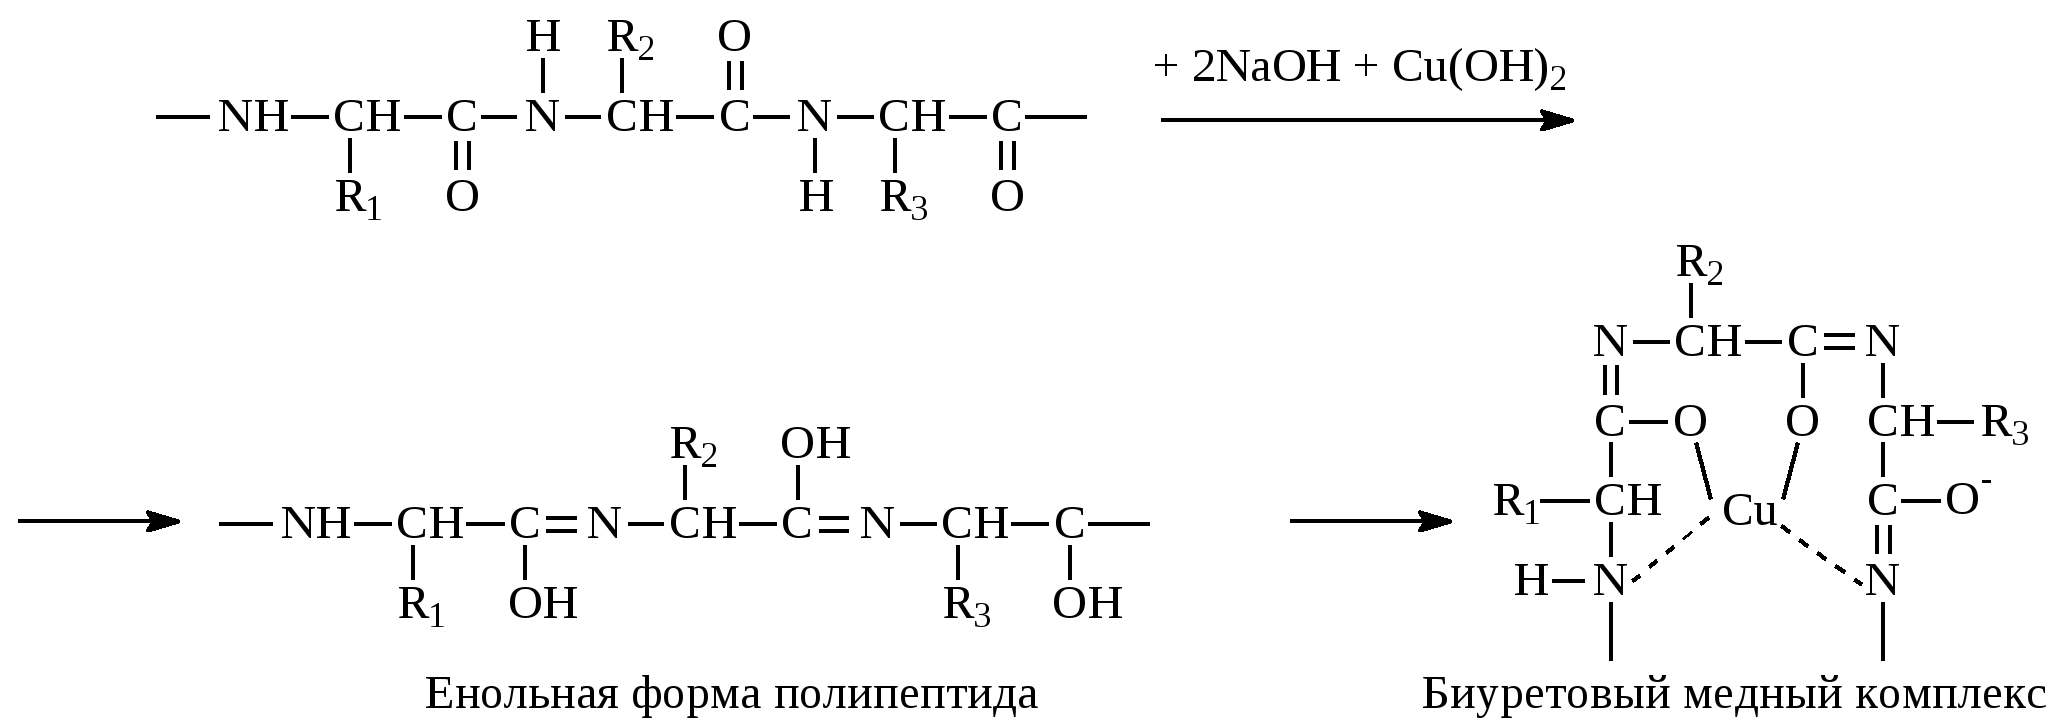 Формы полипептидов. Енольная форма. Реакция глицина с формальдегидом. Глицин и формальдегид. Глицин полипептид